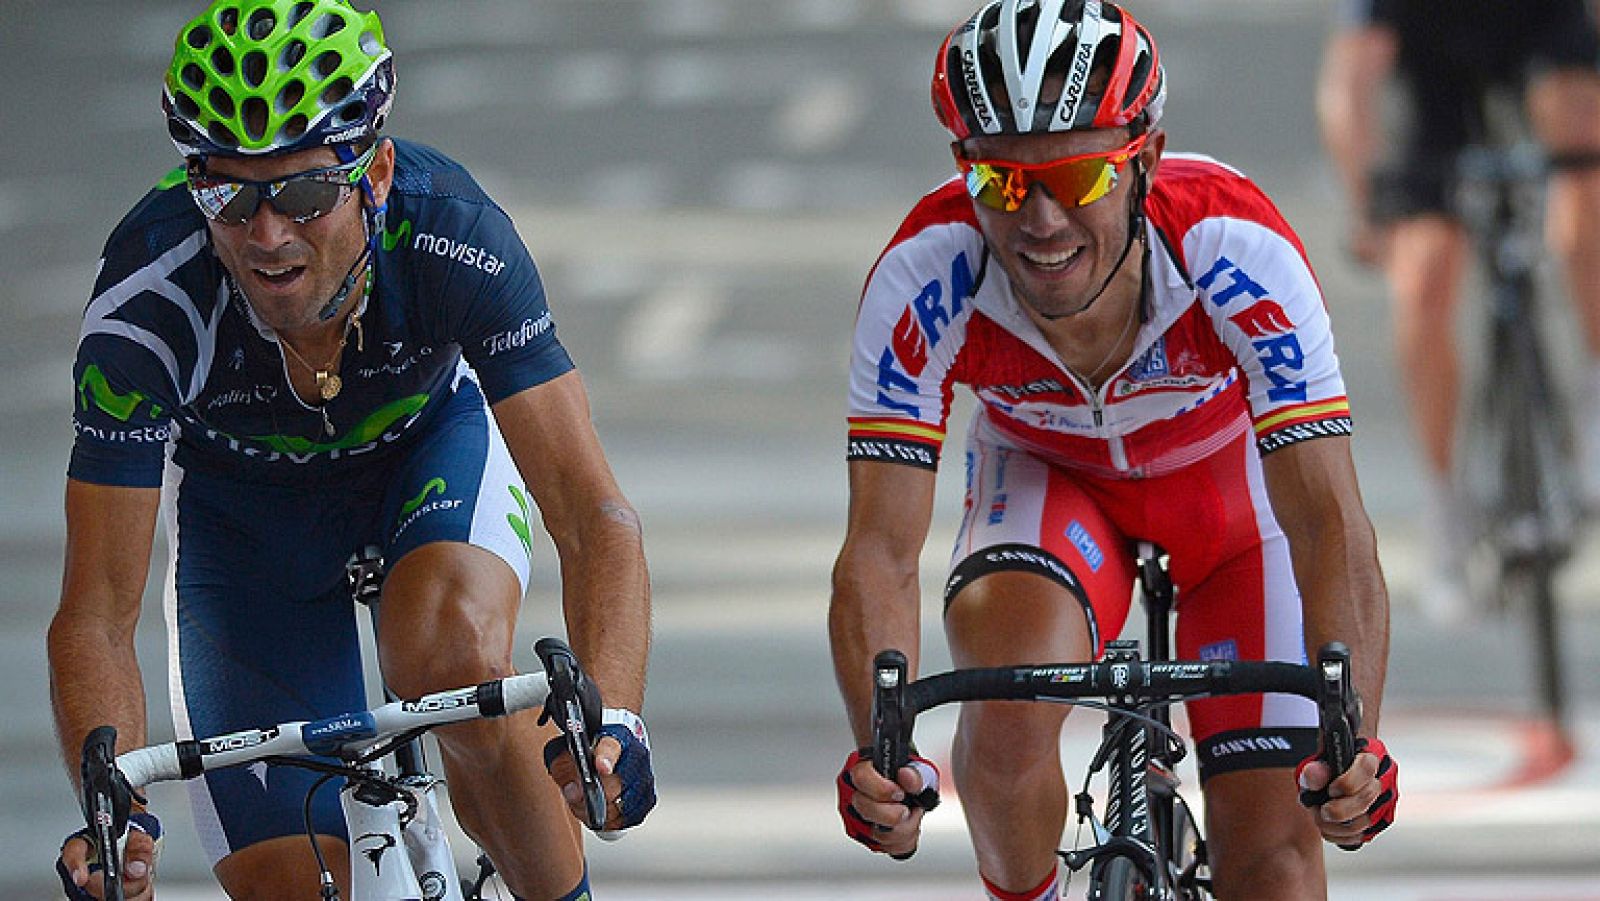 Alejandro Valverde se ha impuesto en la tercera etapa de la Vuelta 2012 gracias al exceso de confianza de 'Purito' Rodríguez en el 'sprint' final en Arrate.